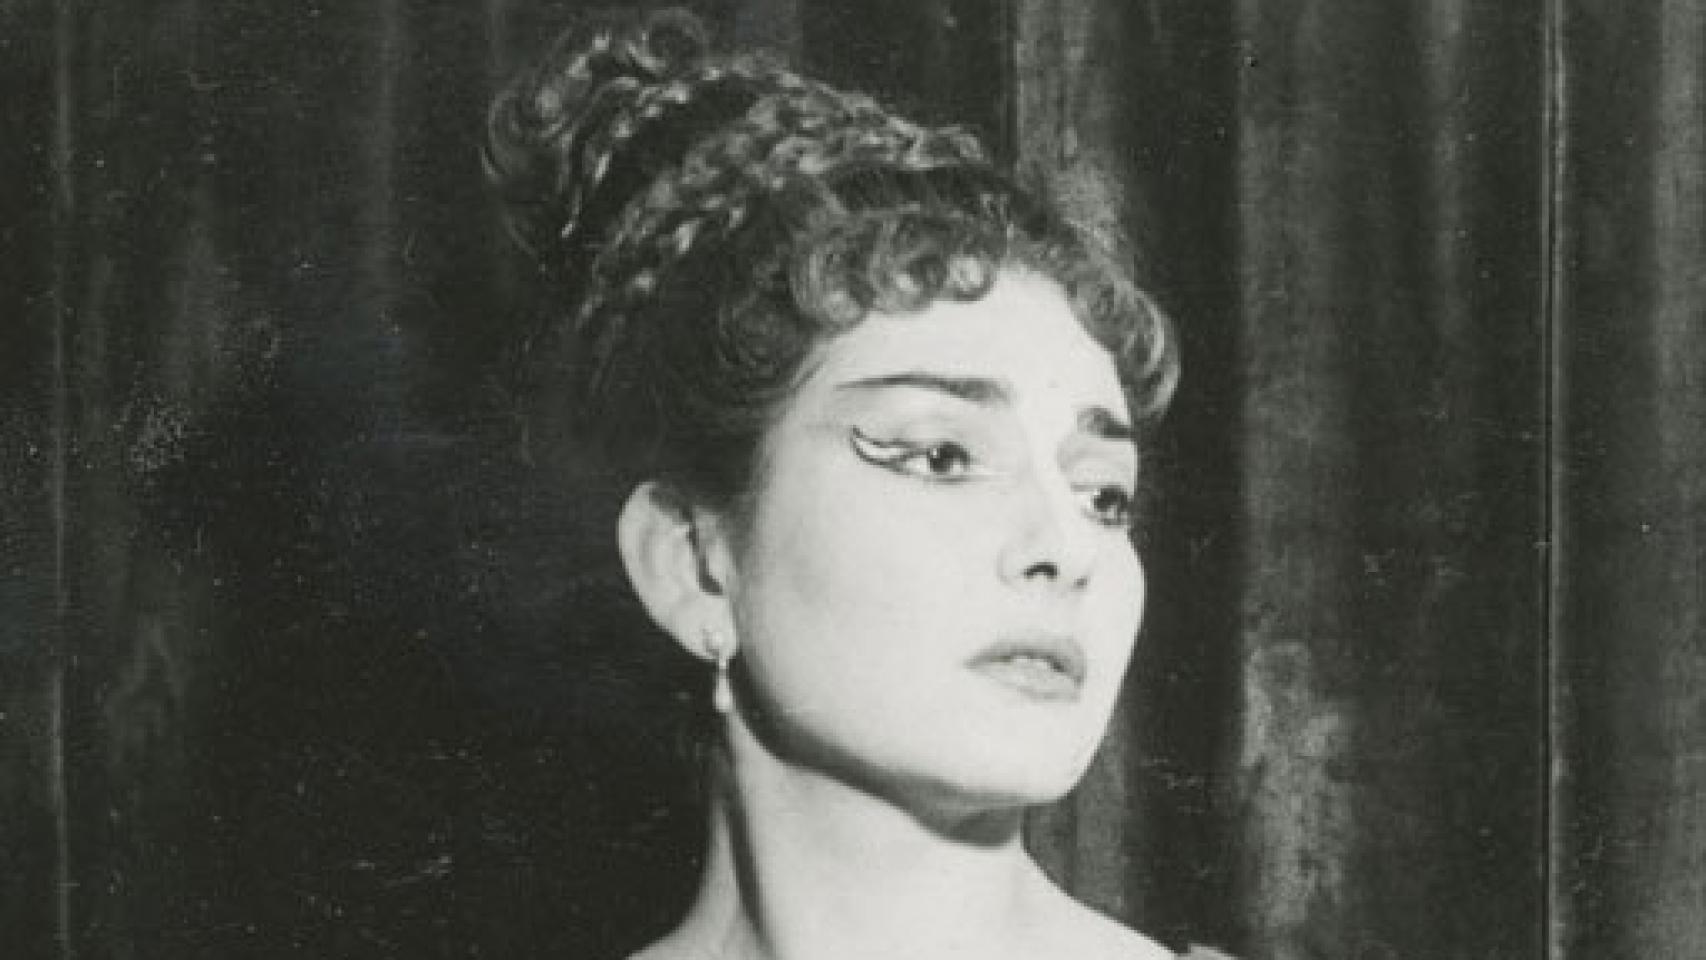 Image: Maria Callas